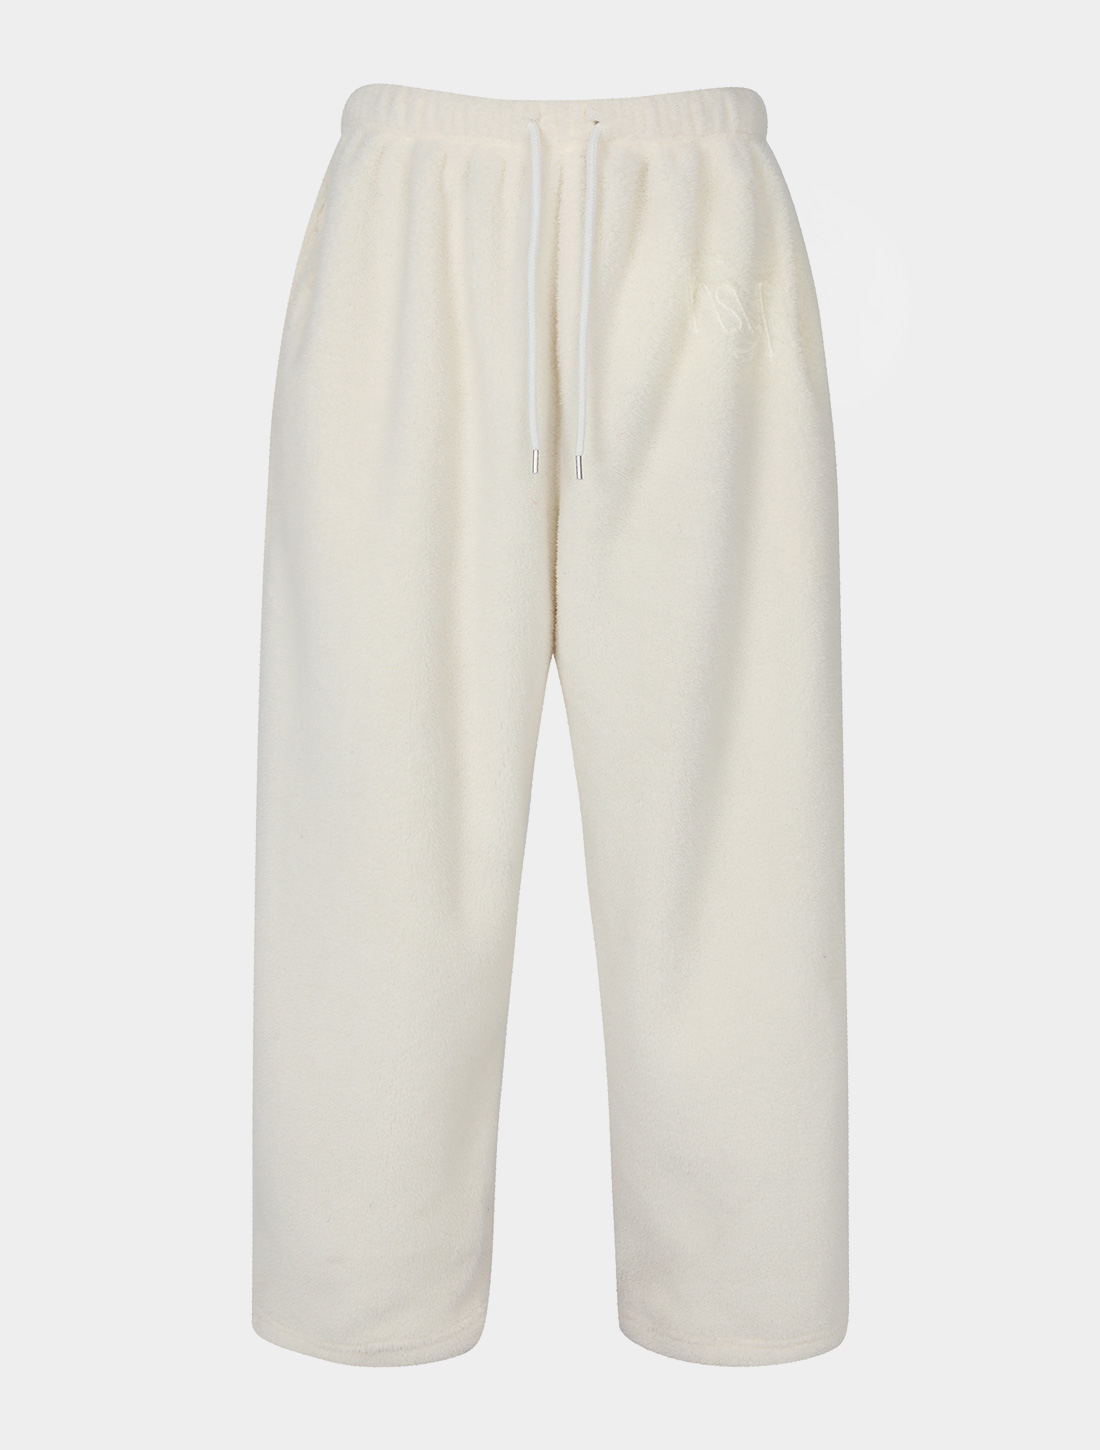 FUSE fleece jogger pants (ivory)